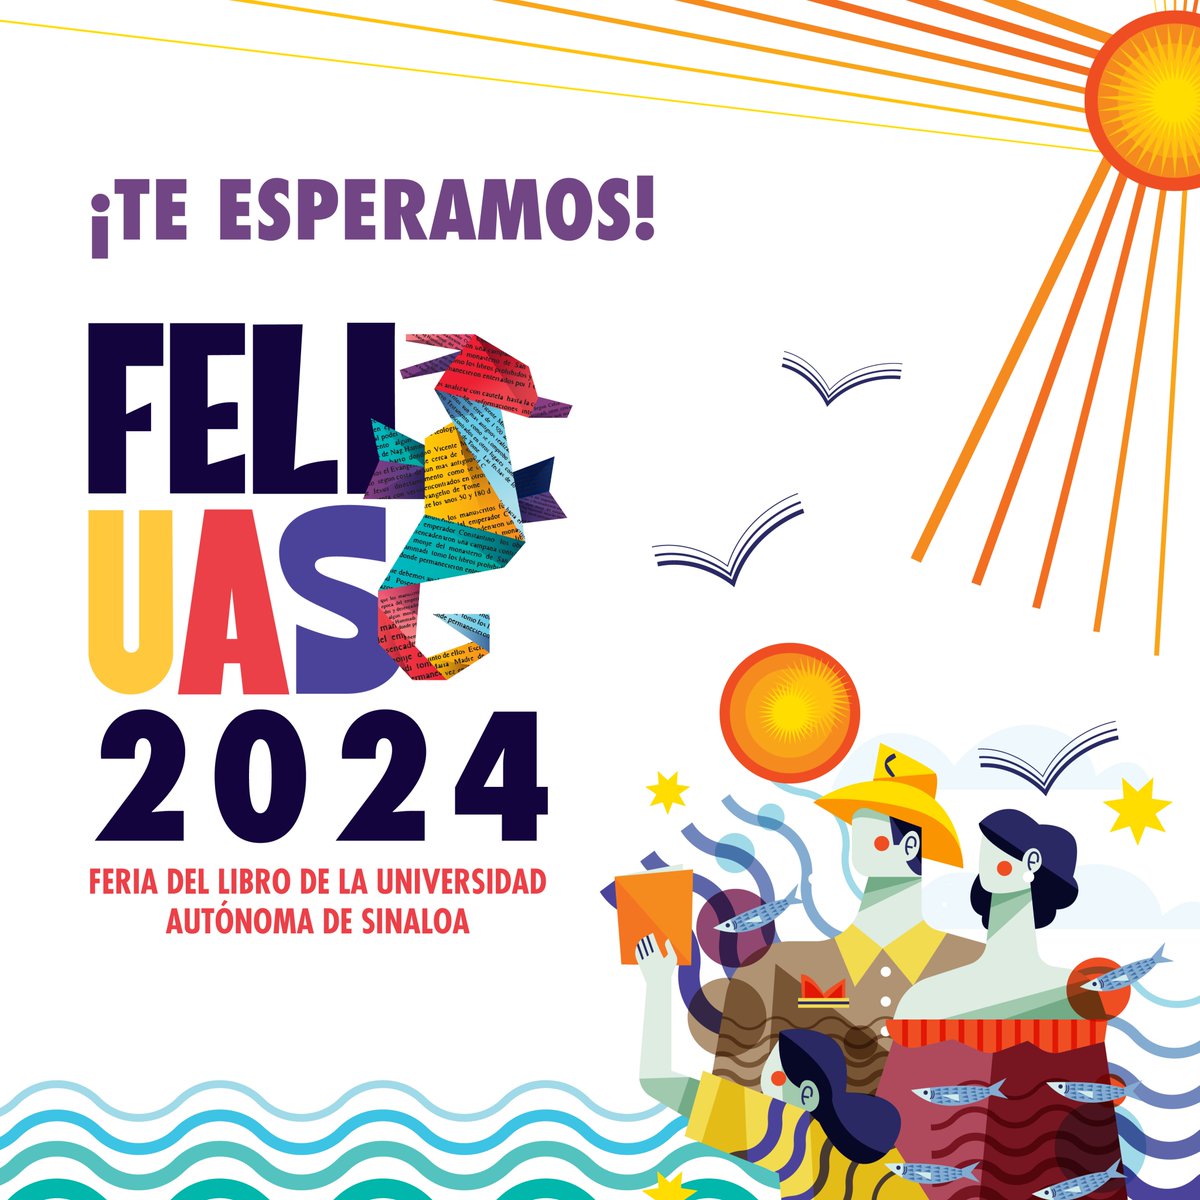 ¡Es hoy! ¡Es hoy! Te esperamos en #FeliUAS2024 📚 #libros #literatura #mazatlán #méxico #uas #editorialuas